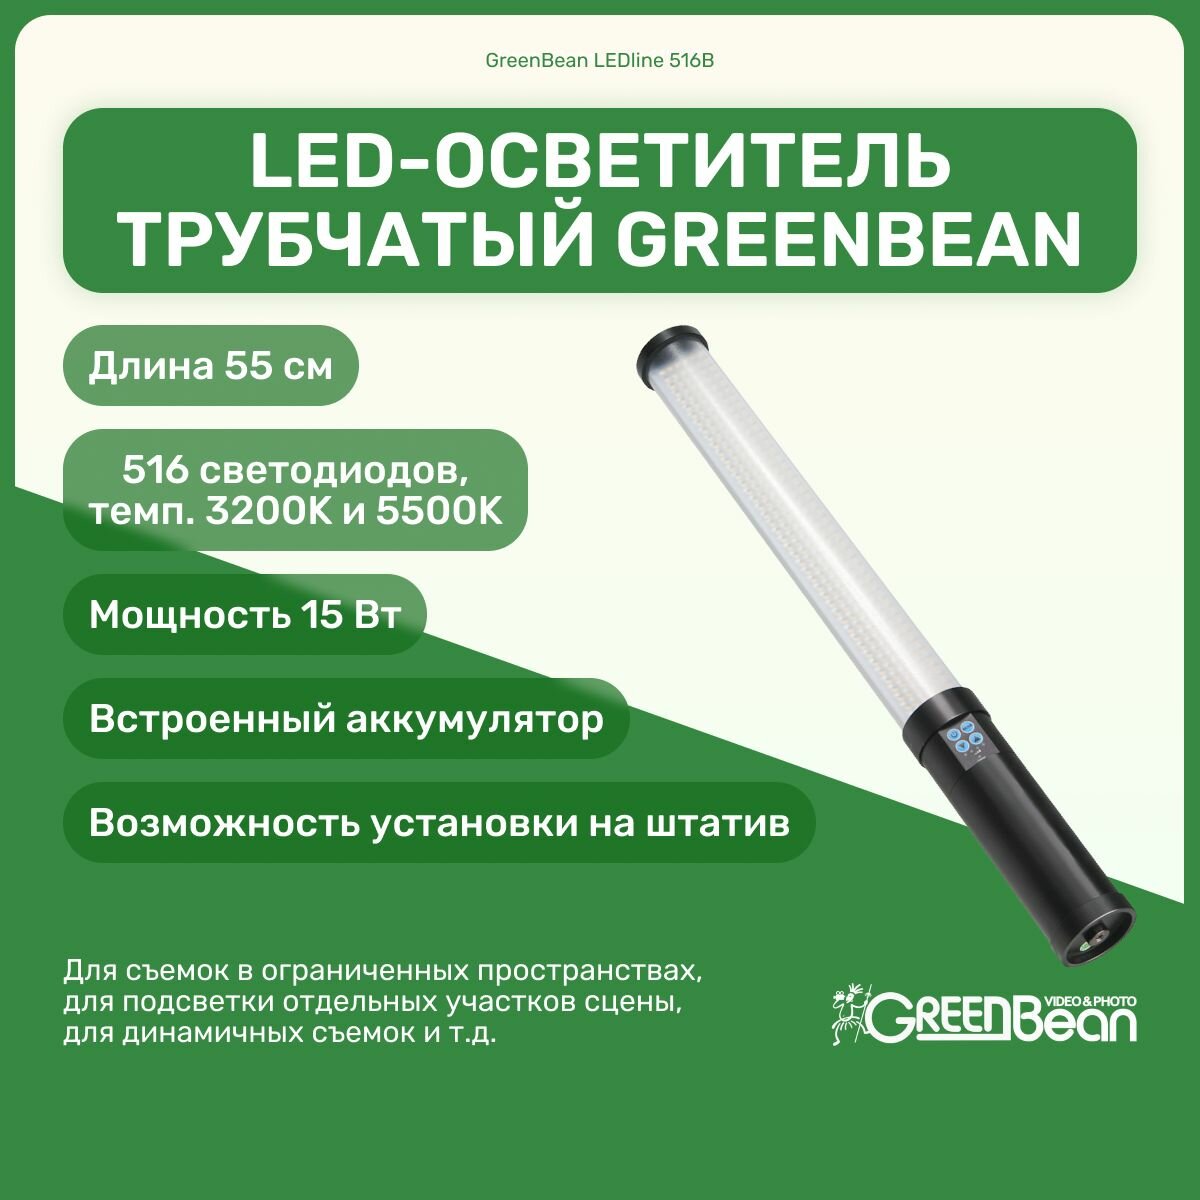 Осветитель светодиодный GreenBean LEDline 516B трубчатый, мобильный, 516 светодиодов, биколор: 3200К, 5500К; для фото и видео съемки